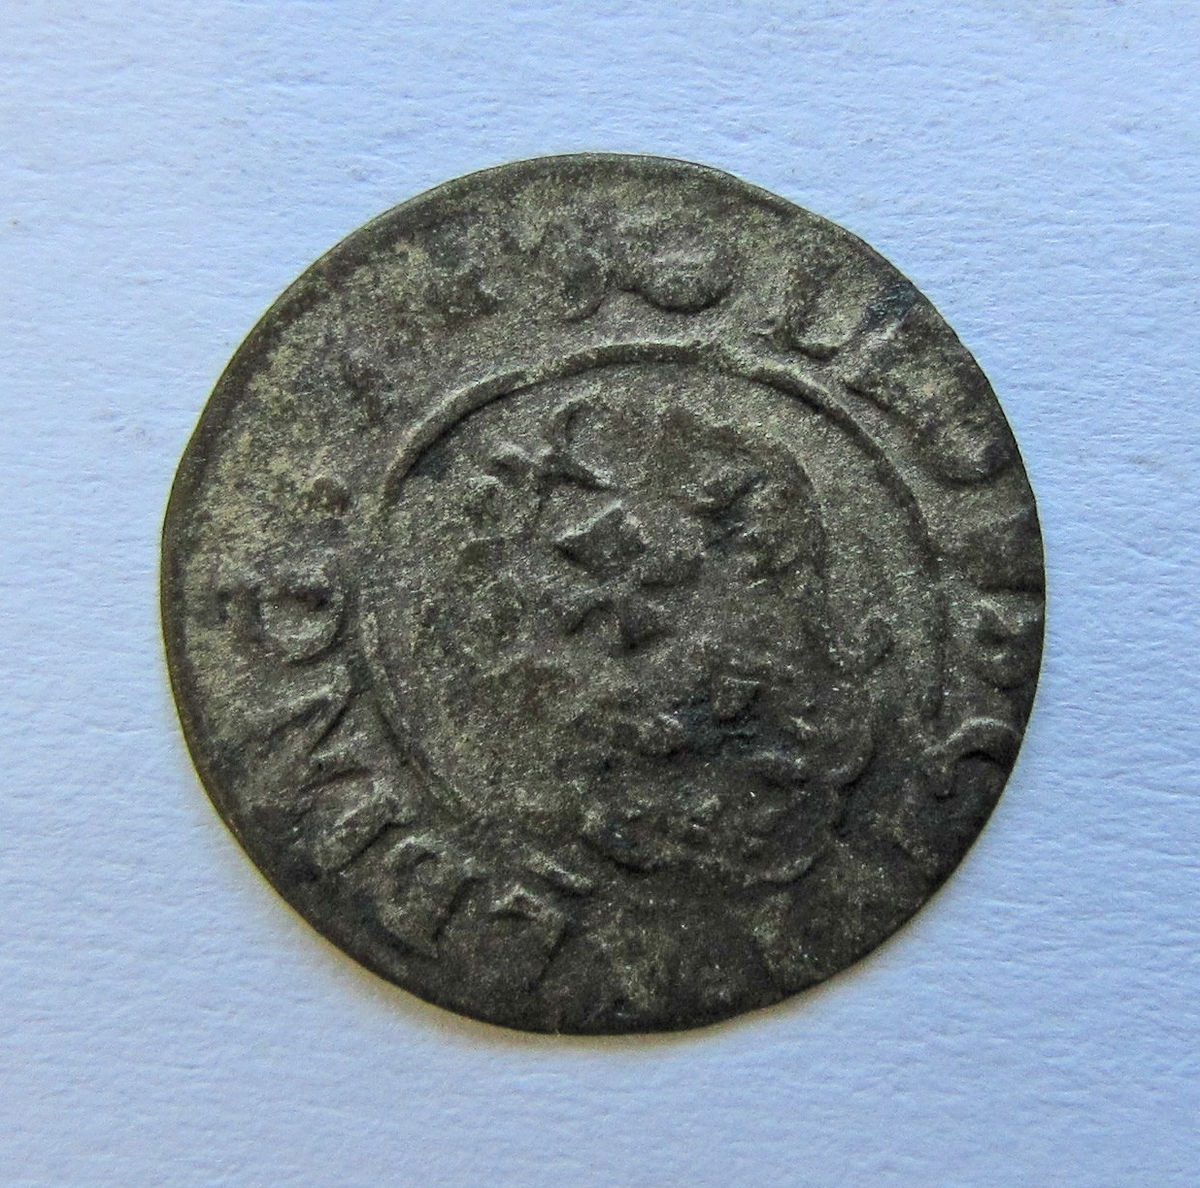 Besittningsmynt från Elbing. Gustav II Adolf, solidus (shilling) av silver. Präglat i Elbing 1628-35. Ingår i en samling mynt:  inv.nr.02 768 - 02 782.